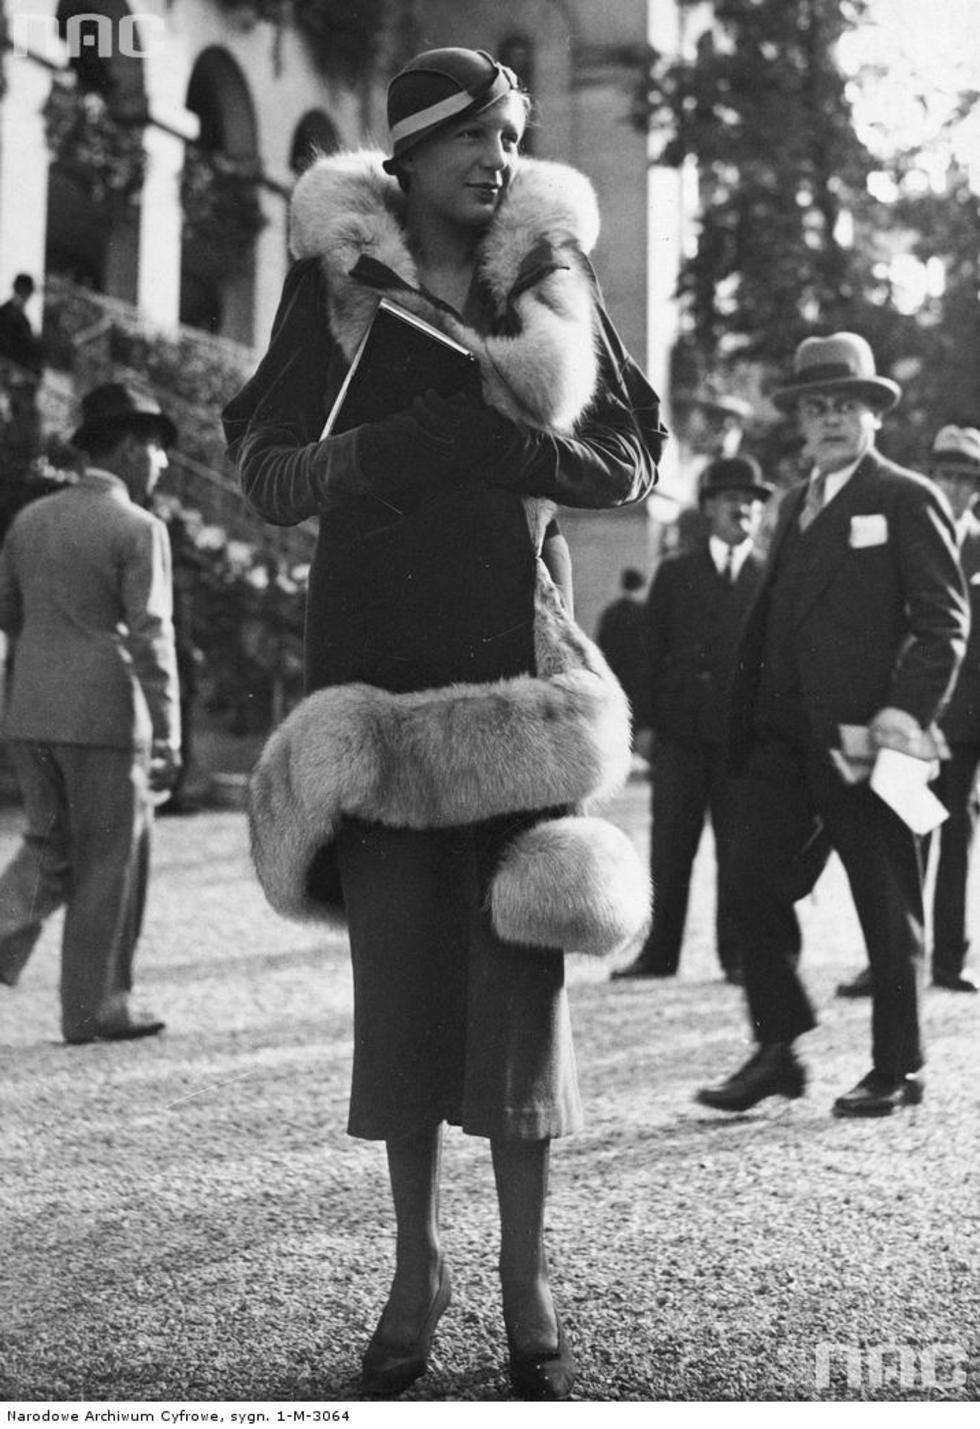  Moda damska prezentowana na wyścigach konnych Longchamp w Paryżu. Modelka prezentuje kostium obszyty futrem. 1933-10-08

